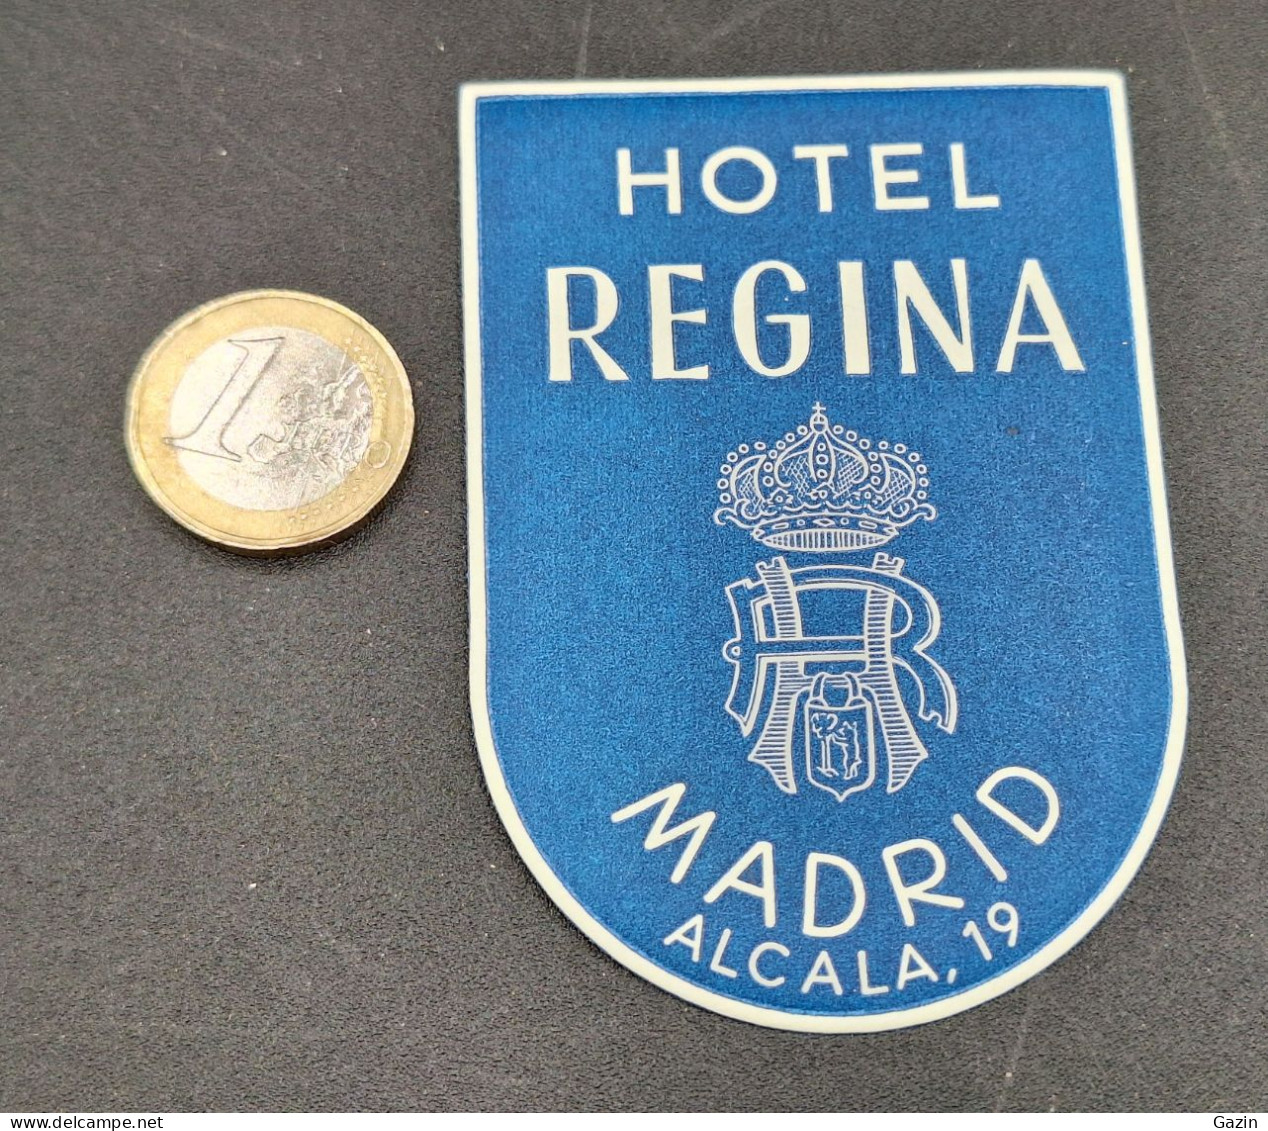 C7/3 - Hotel Regina * Madrid * Espana * Luggage Lable * Rótulo * Etiqueta - Etiquettes D'hotels